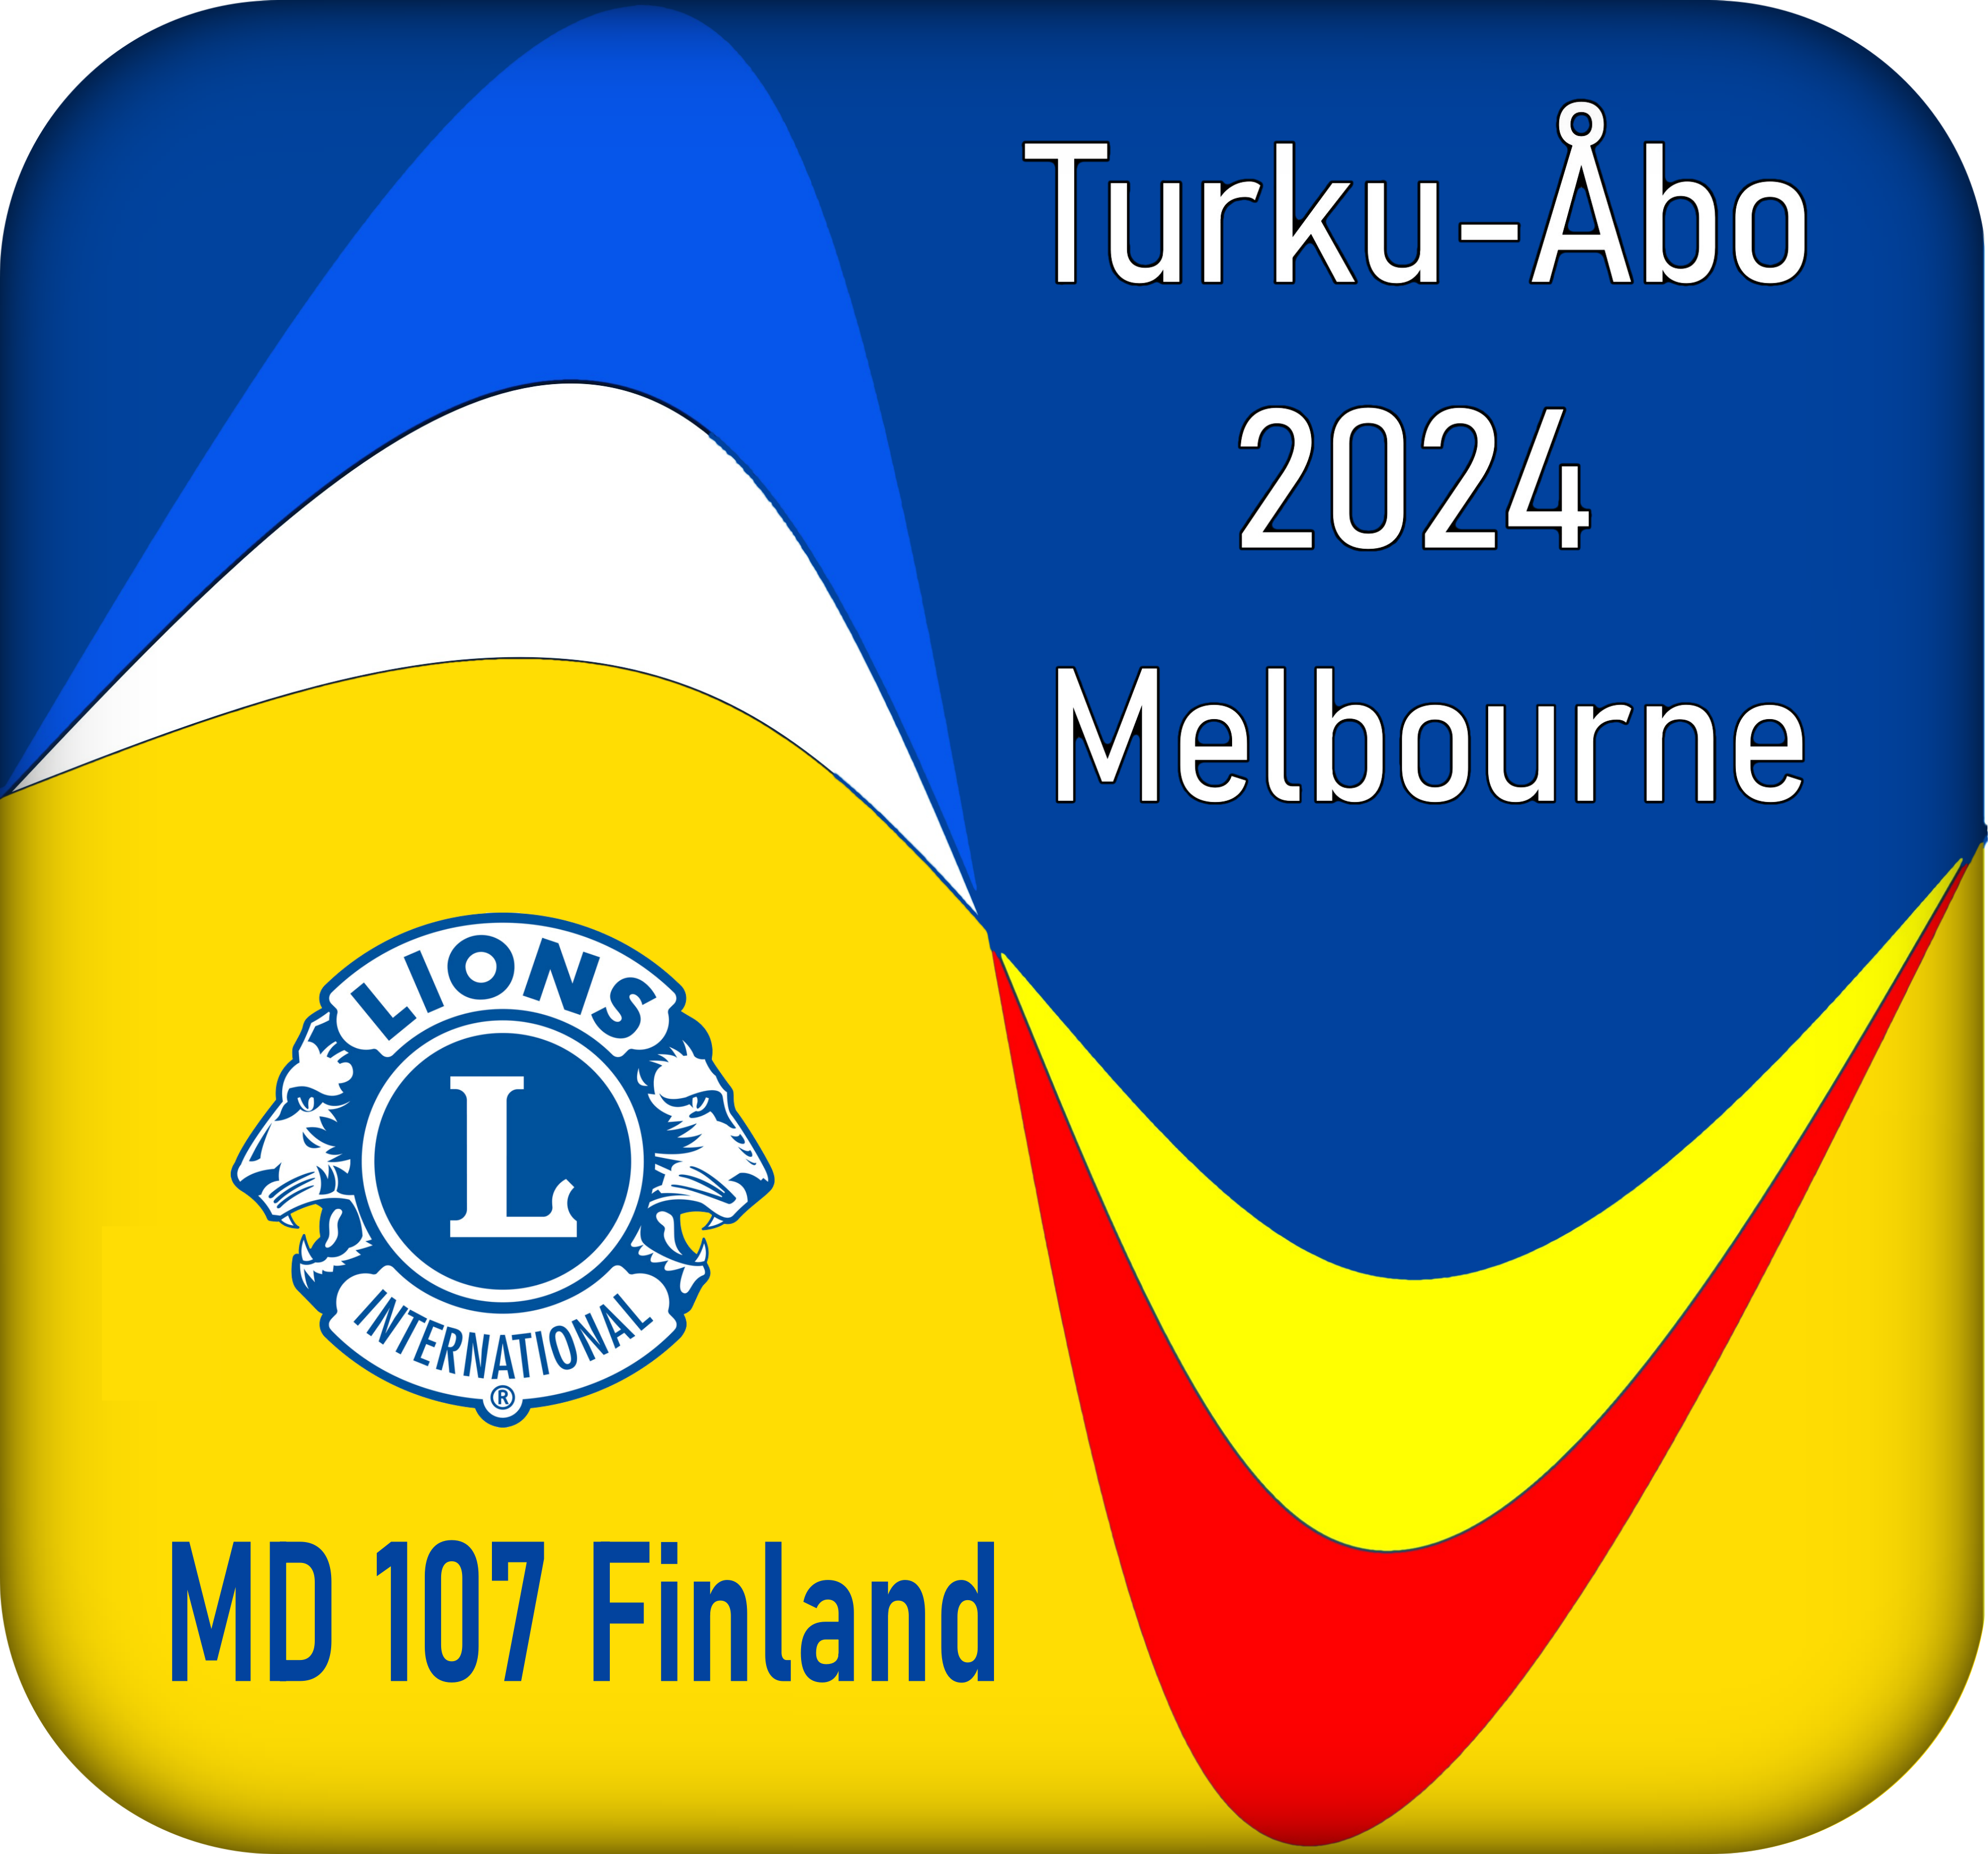 Vuosikokous 2024, Turku